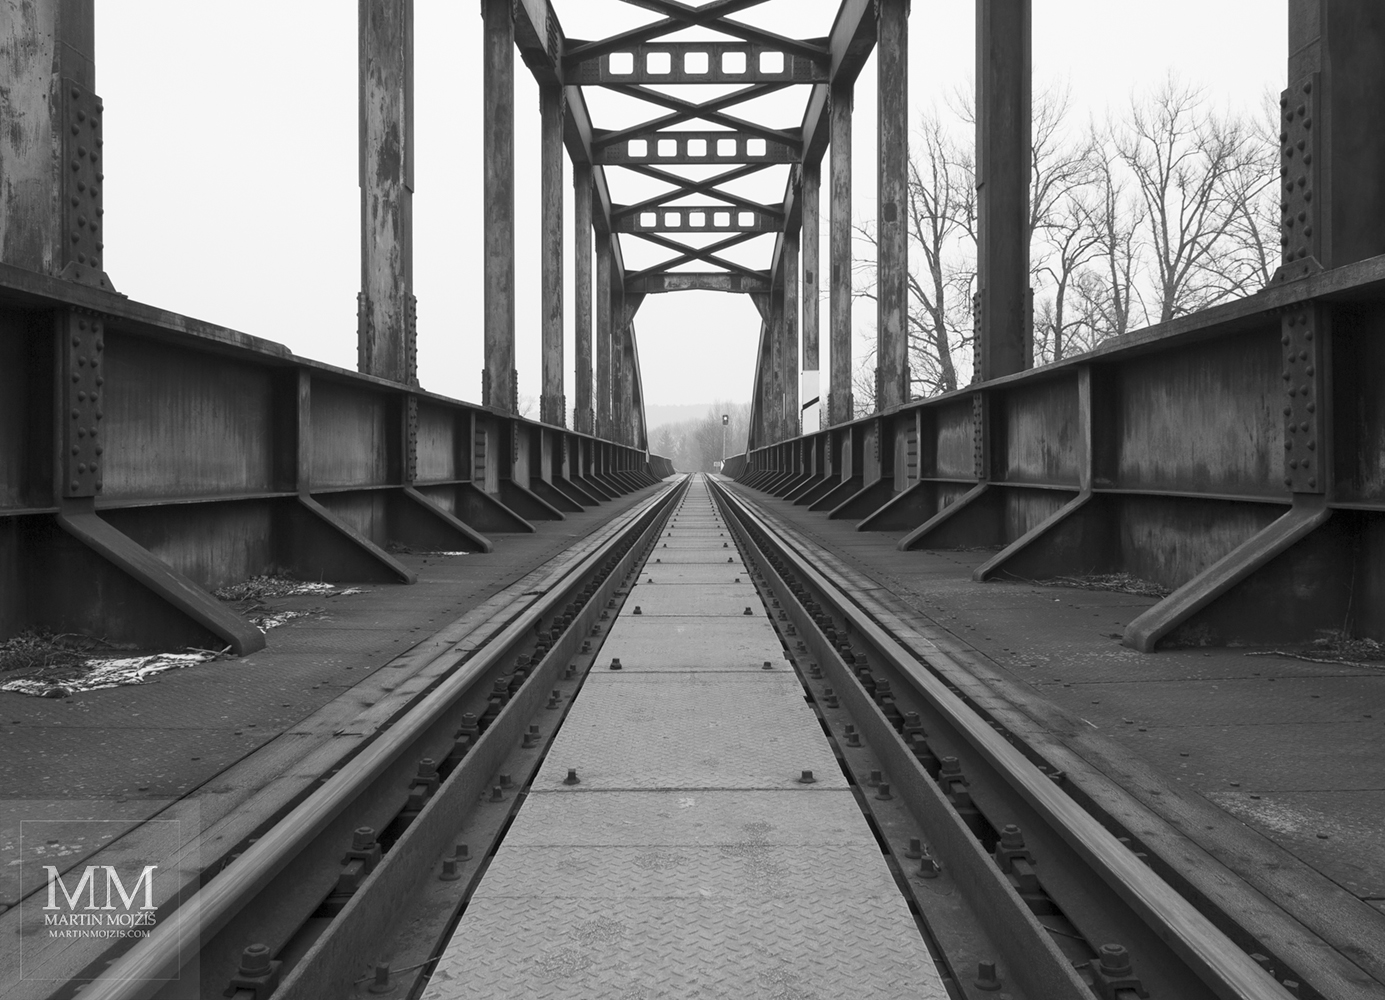 Jednokolejná trať vedoucí po ocelovém mostě. Umělecká černobílá fotografie Martina Mojžíše s názvem AŽ SE BUDE ŠEŘIT.